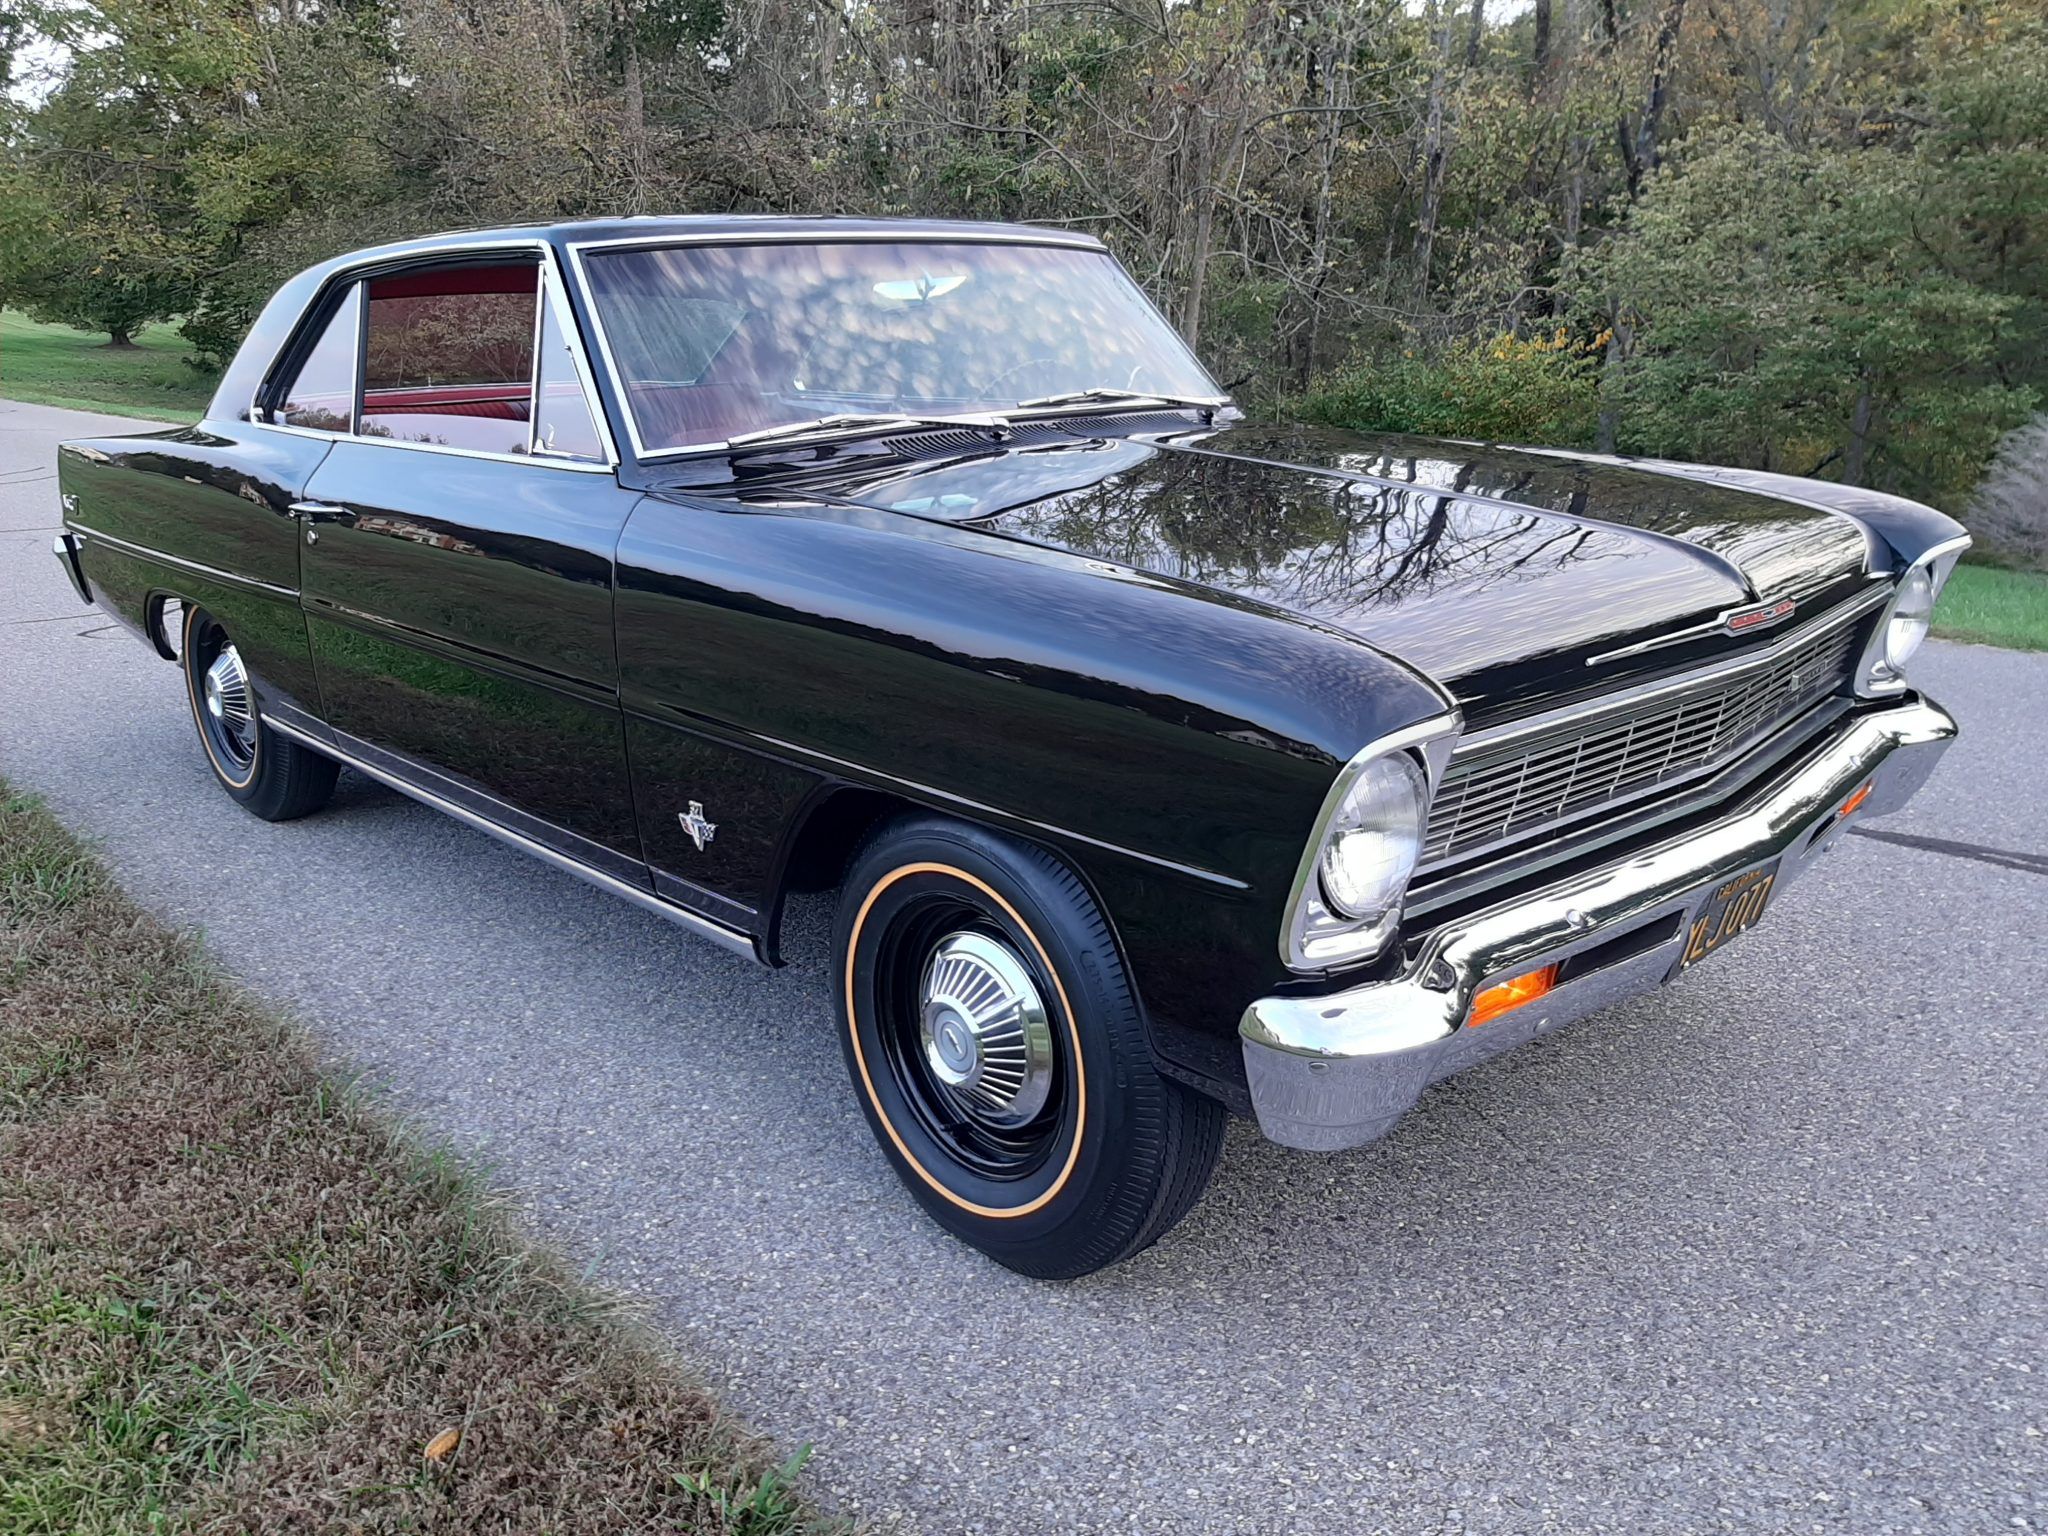 Dark Blue 1966-1967 Chevrolet Nova (Second Generation)